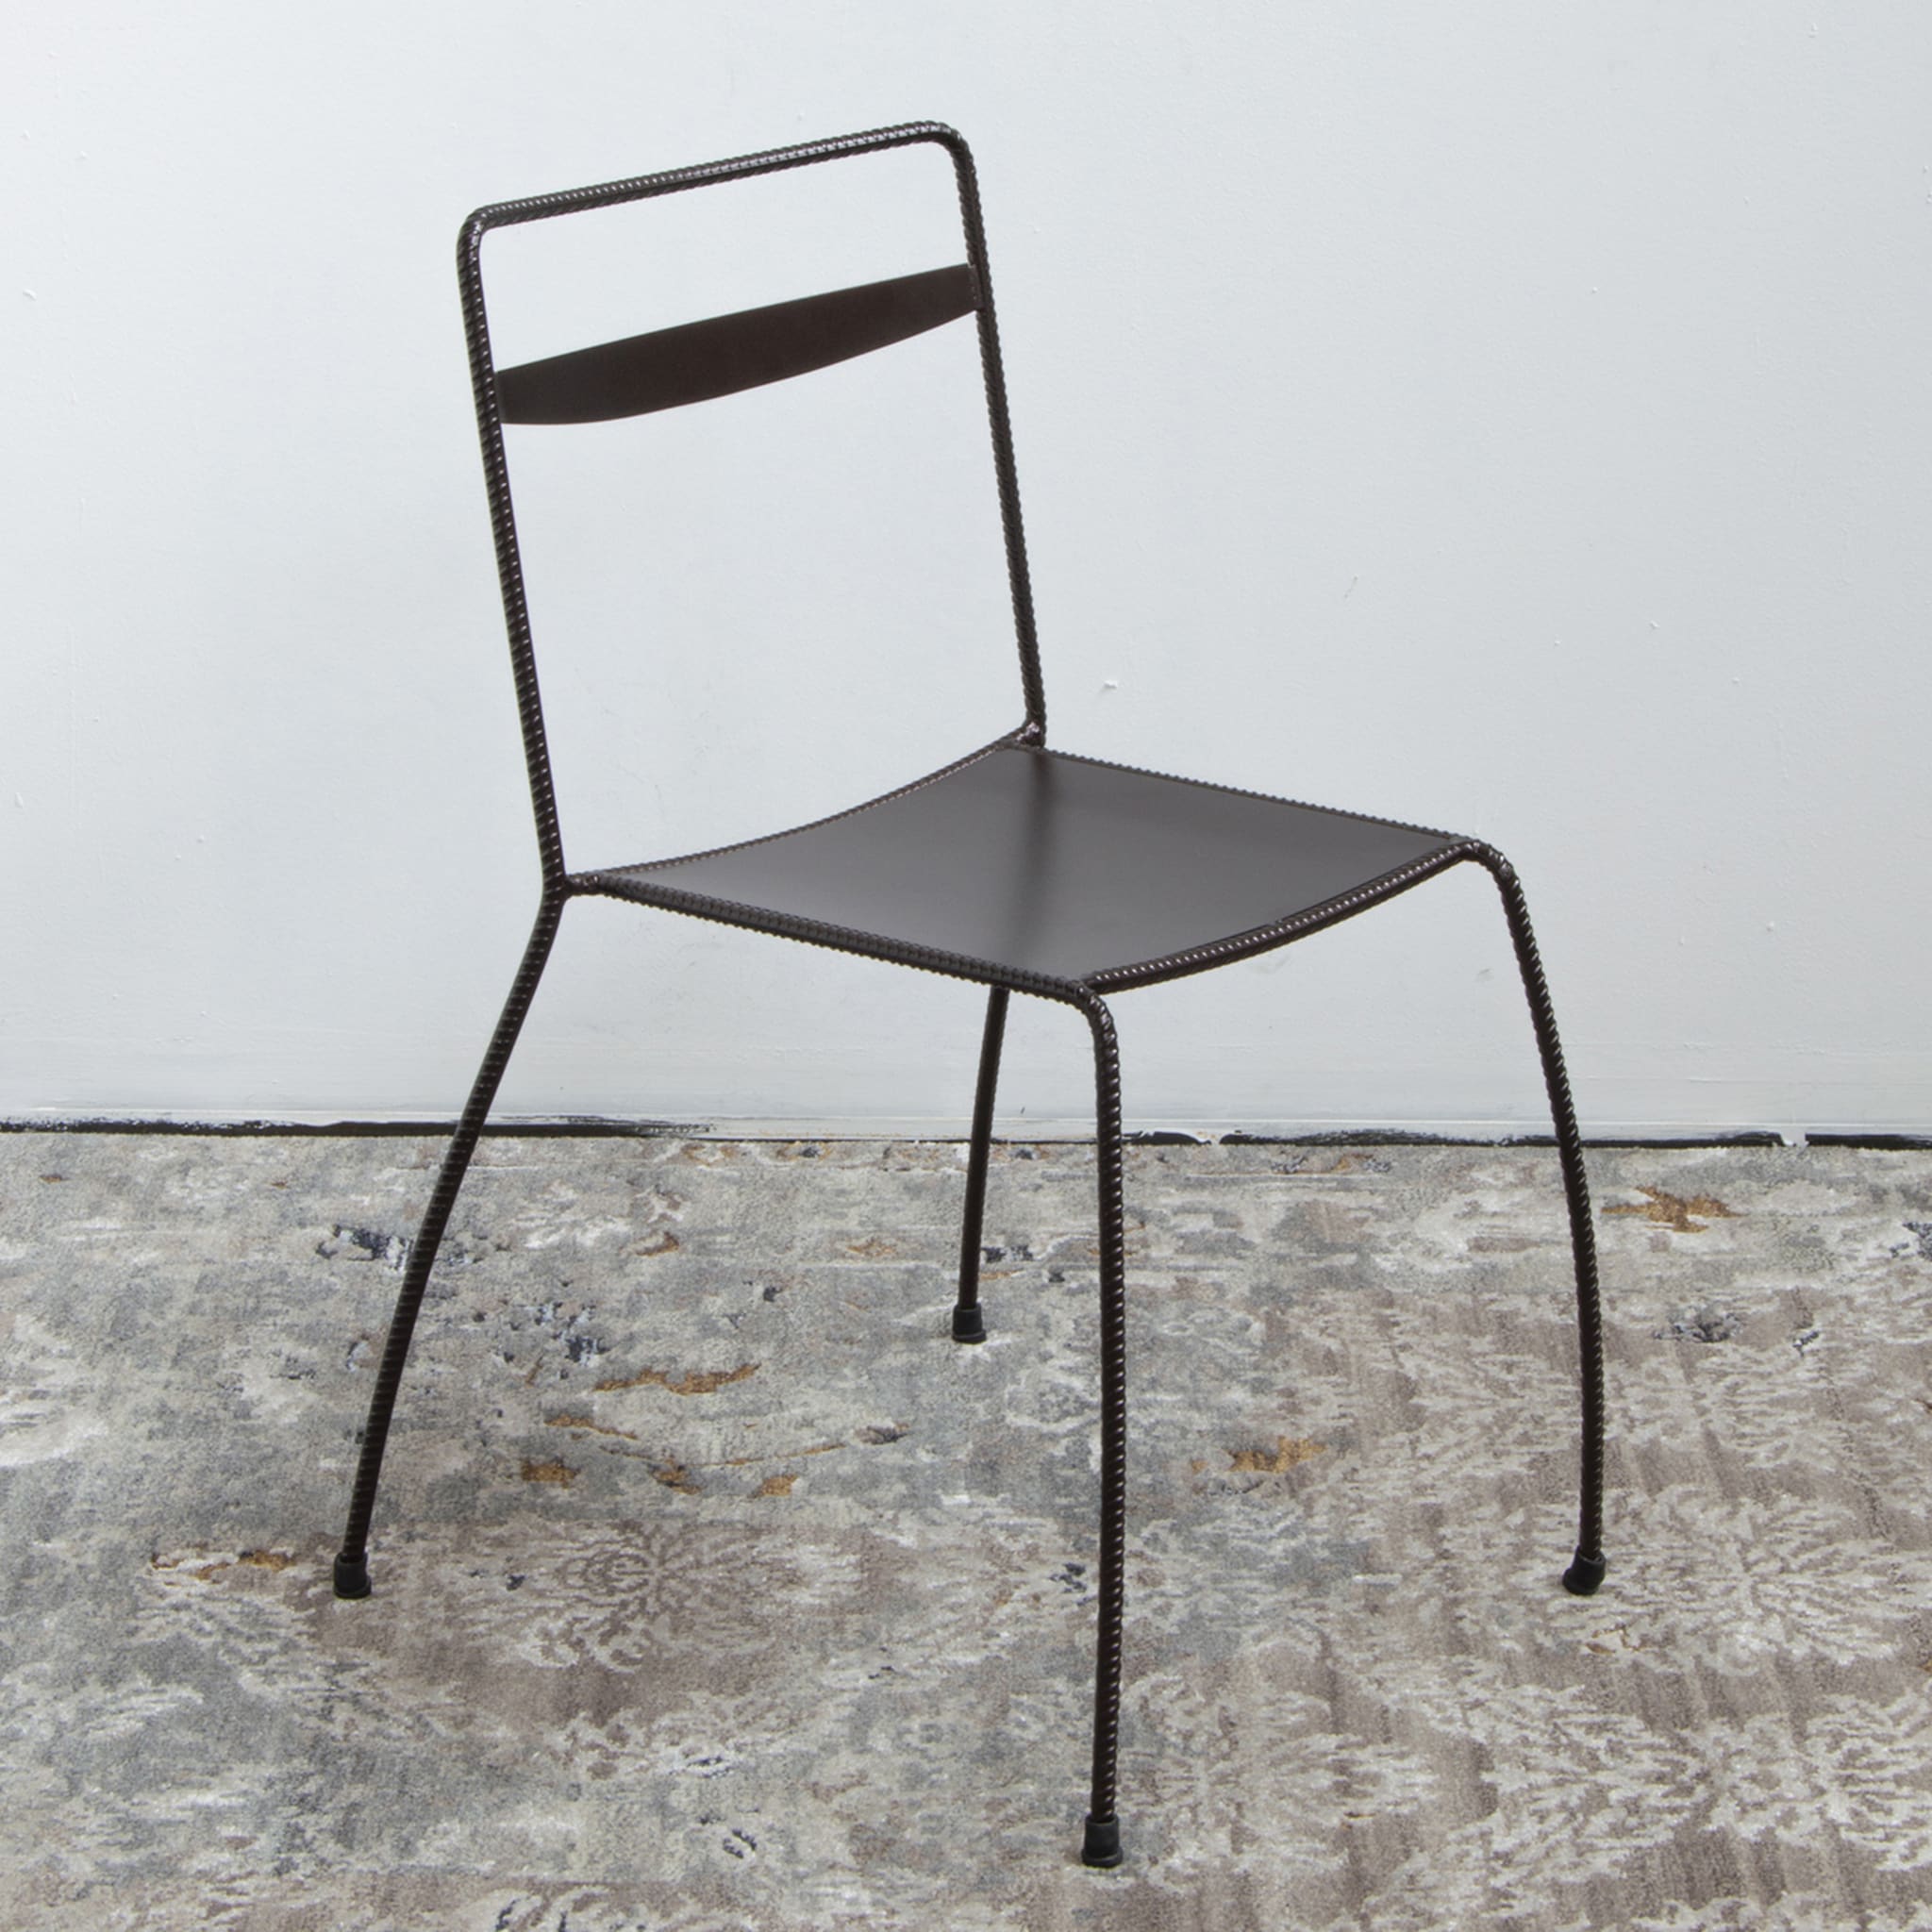 Tondella Brown Chair by Maurizio Peregalli - Alternative view 1